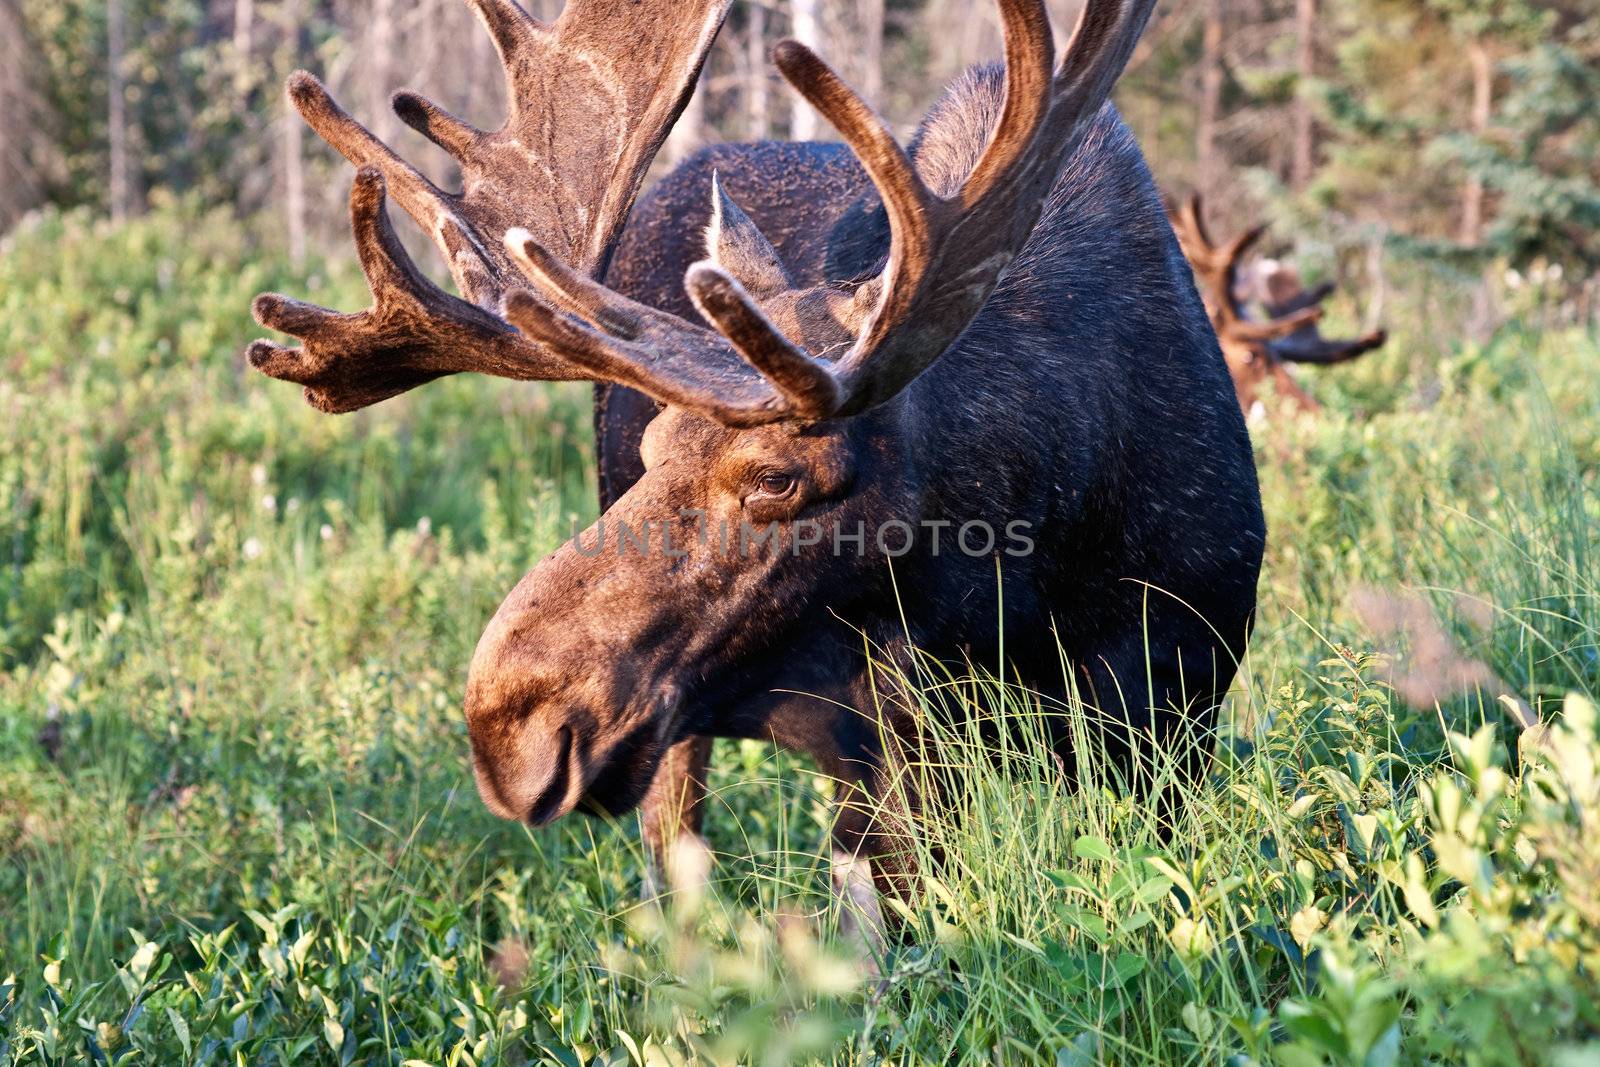 Bull moose feeding in Algonquin Park, Ontario Canada